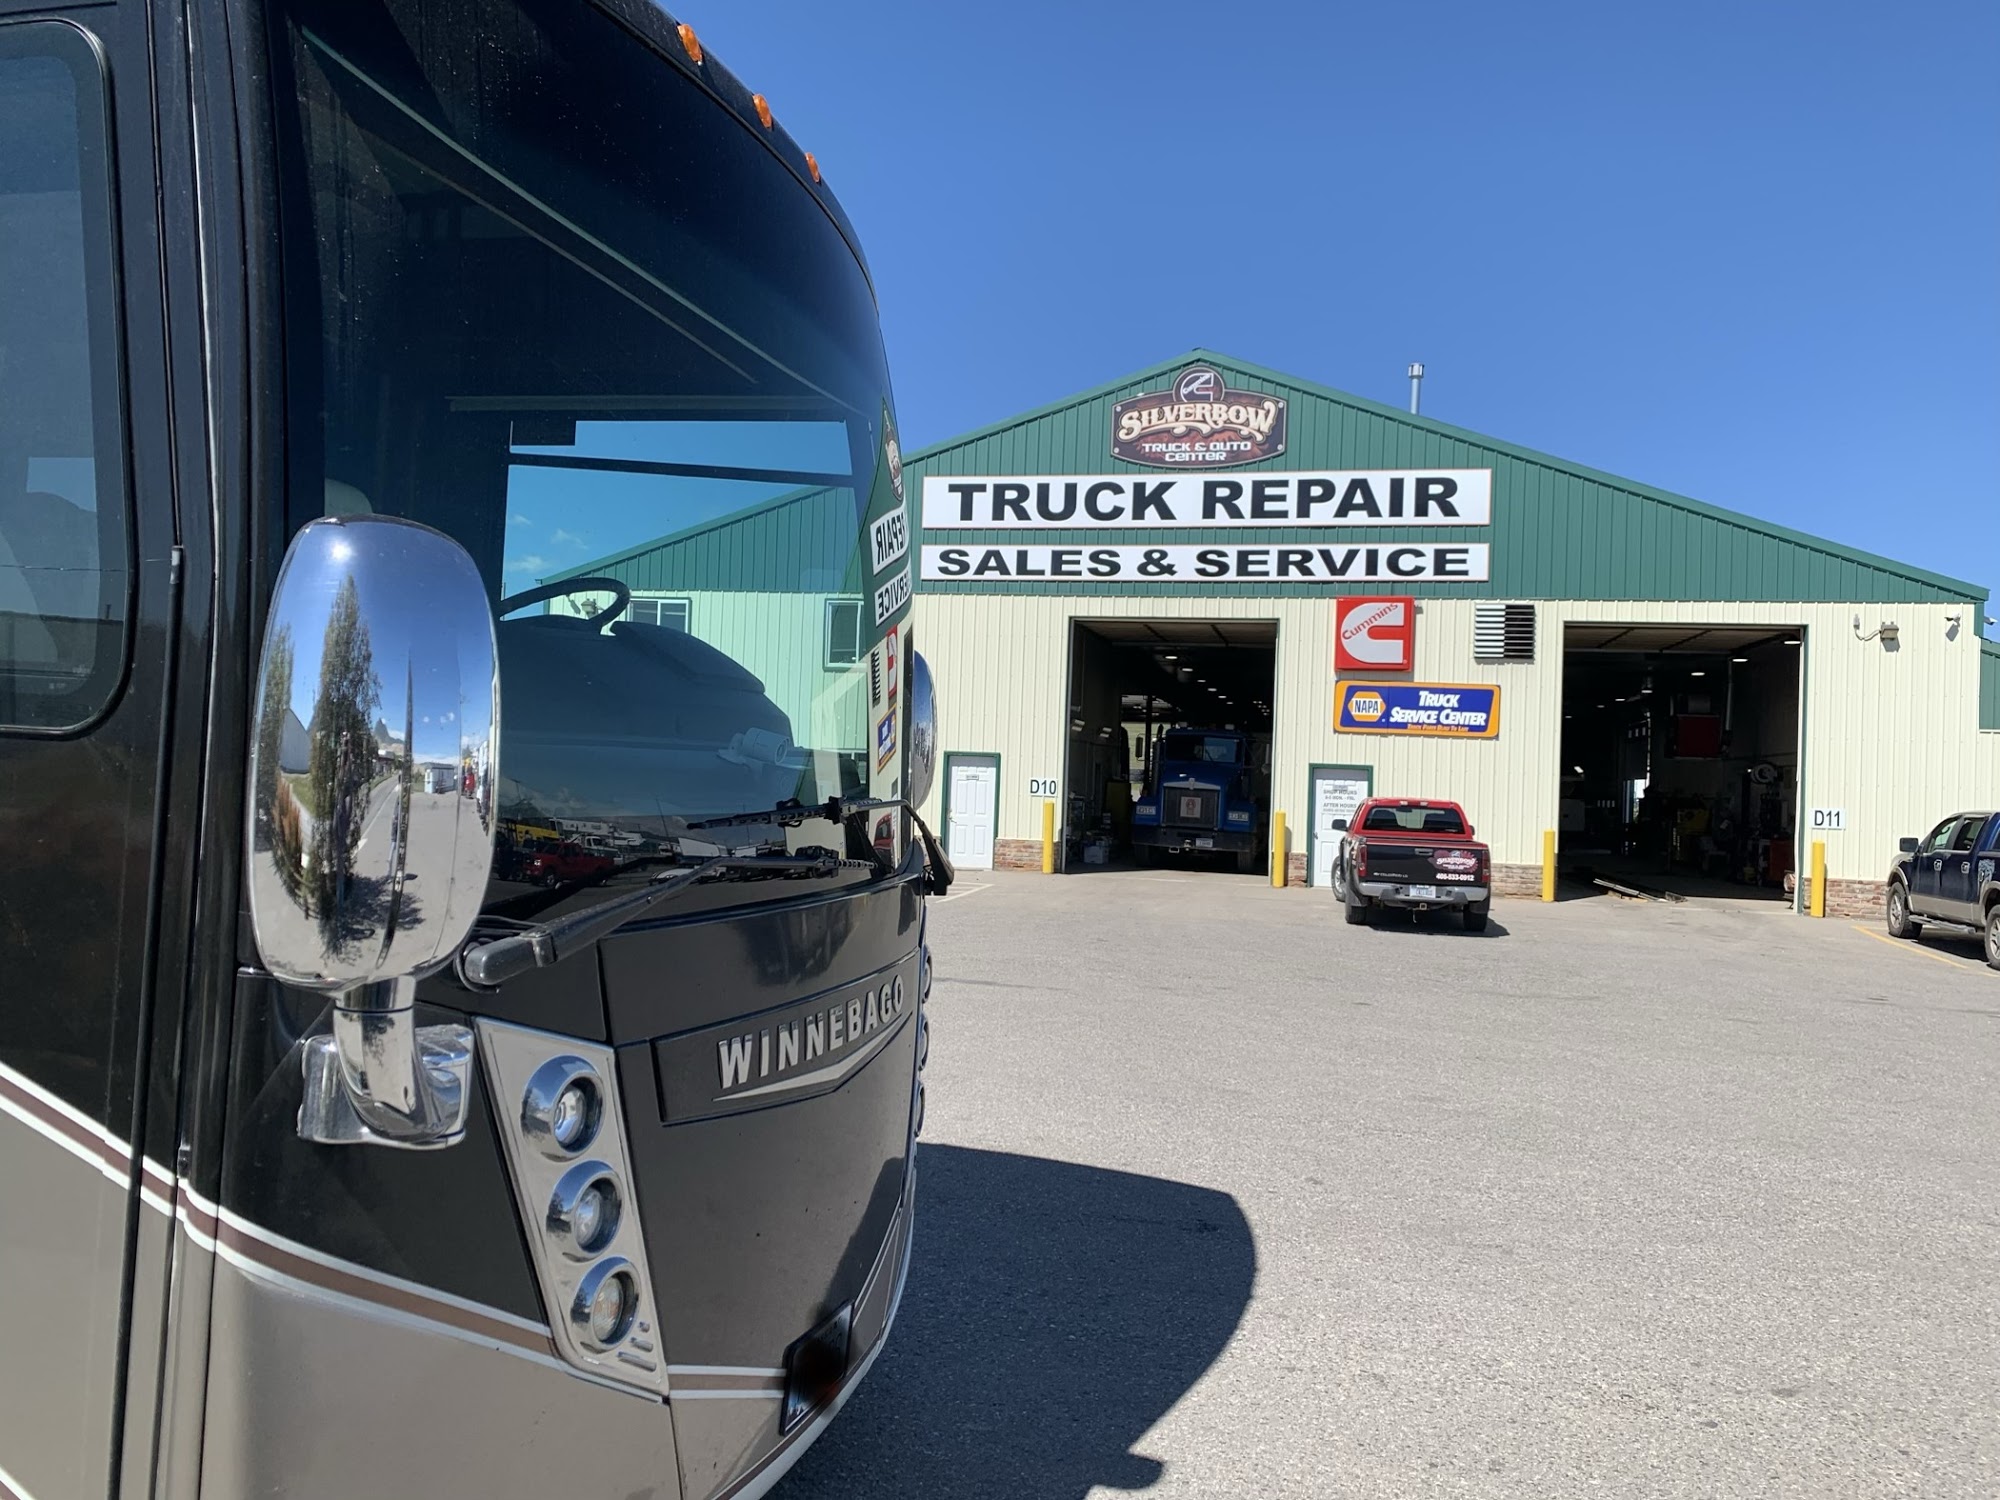 Silver Bow Truck & Auto Center